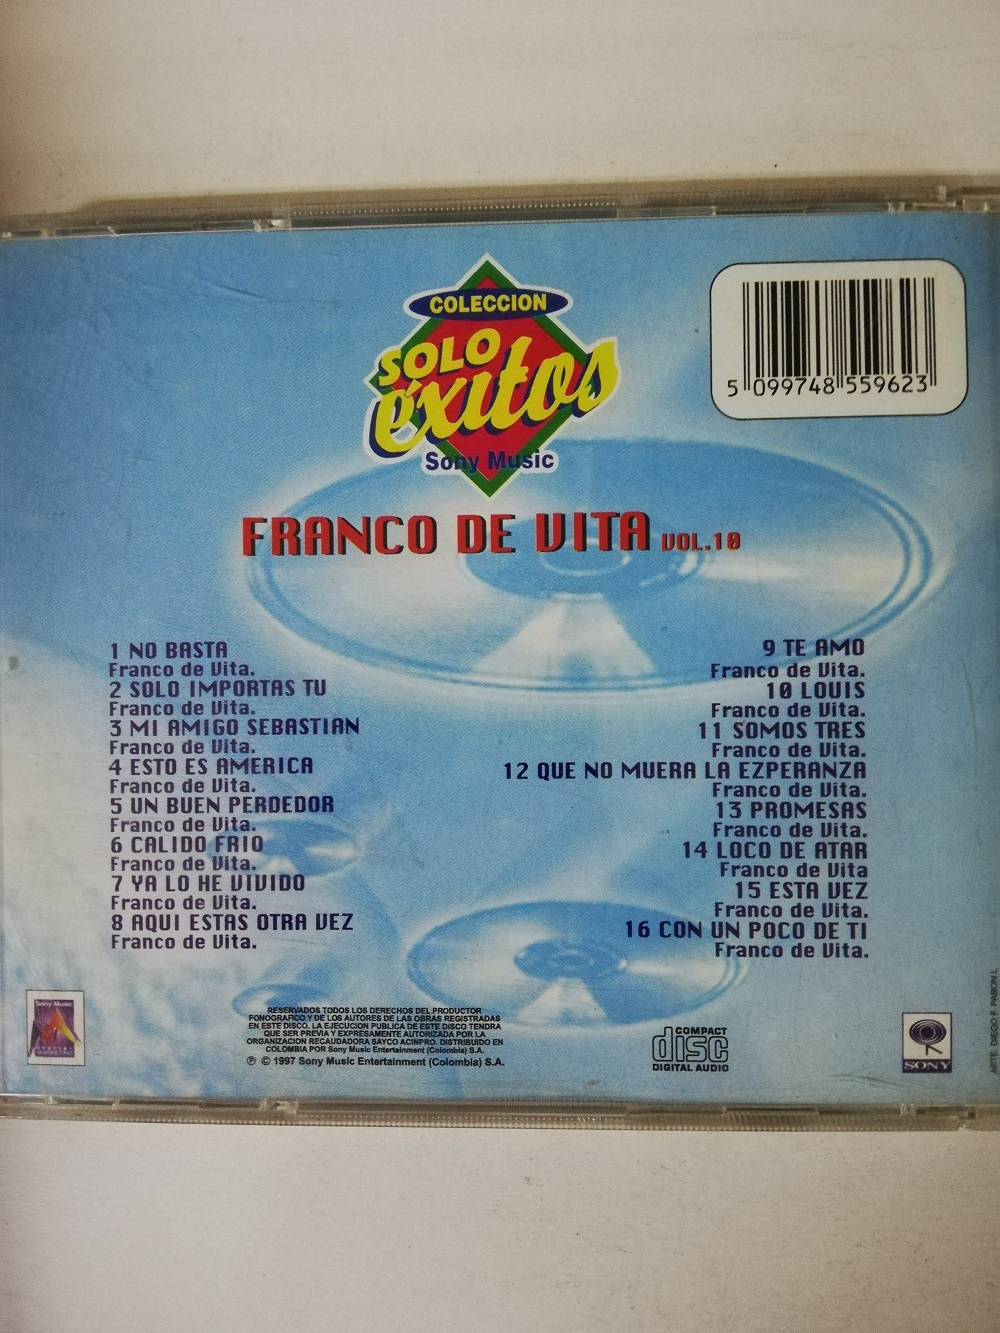 Imagen CD FRANCO DE VITA - SOLO EXITOS  2